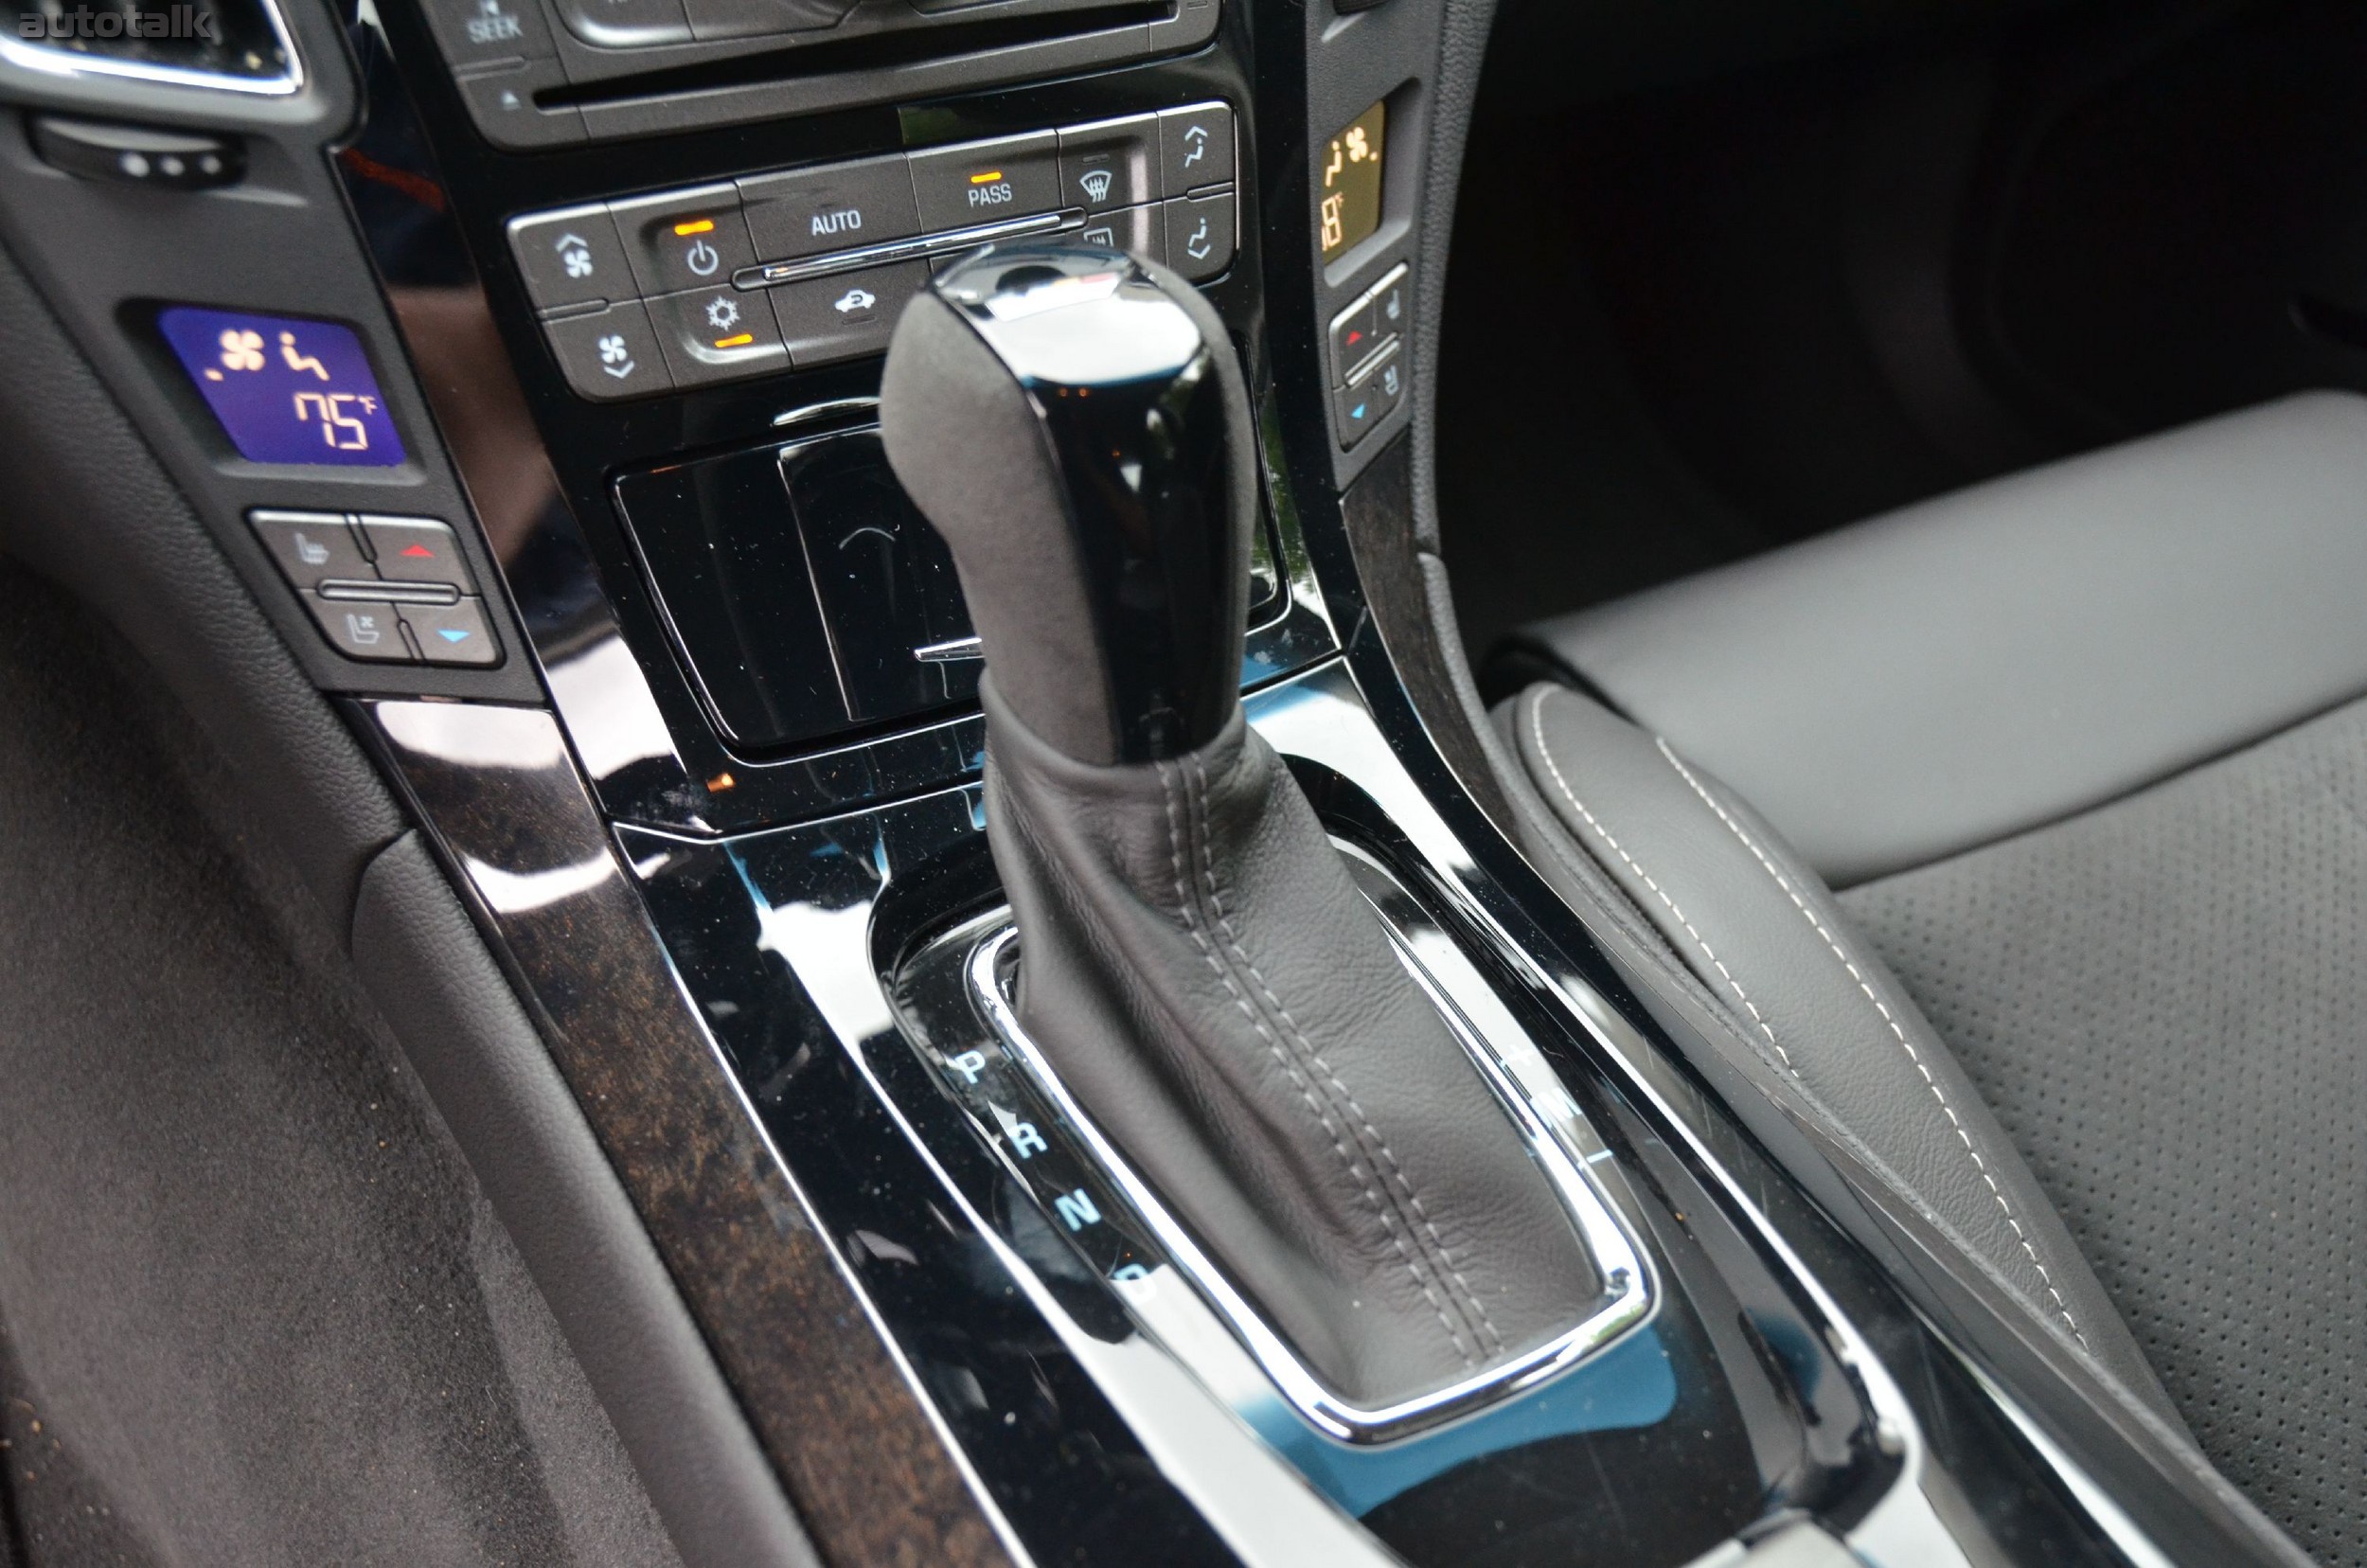 2012 Cadillac CTS-V Sedan Review